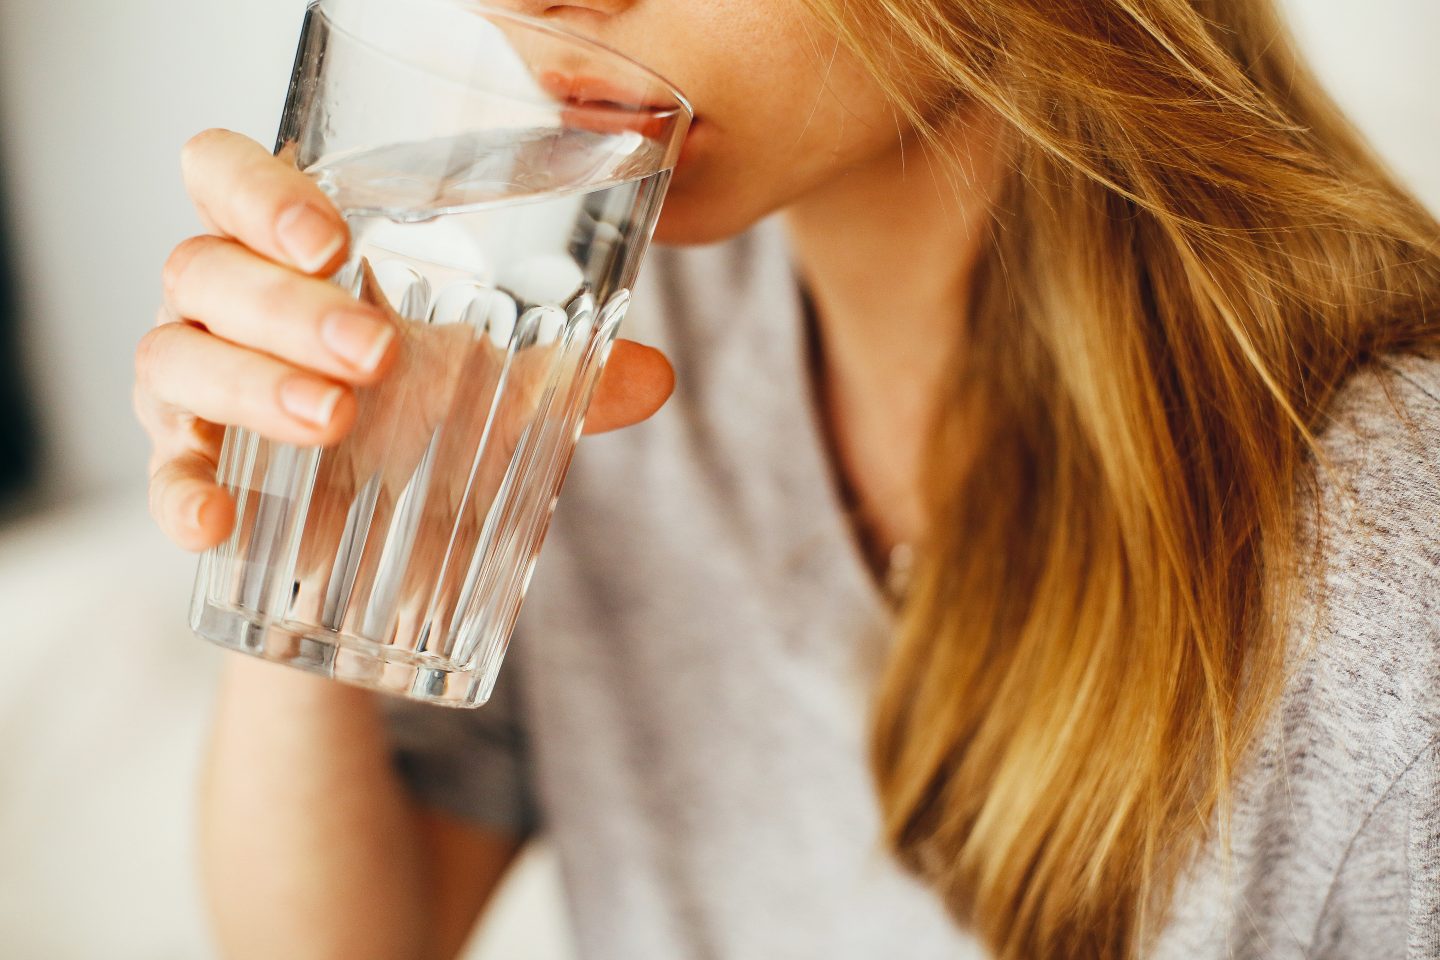 فوائد شرب الماء قبل النوم يغفل عنها الكثيرين: تناول كوب واحد يوميًا وشاهد ما سيحدث لجسمك في 5 أيام